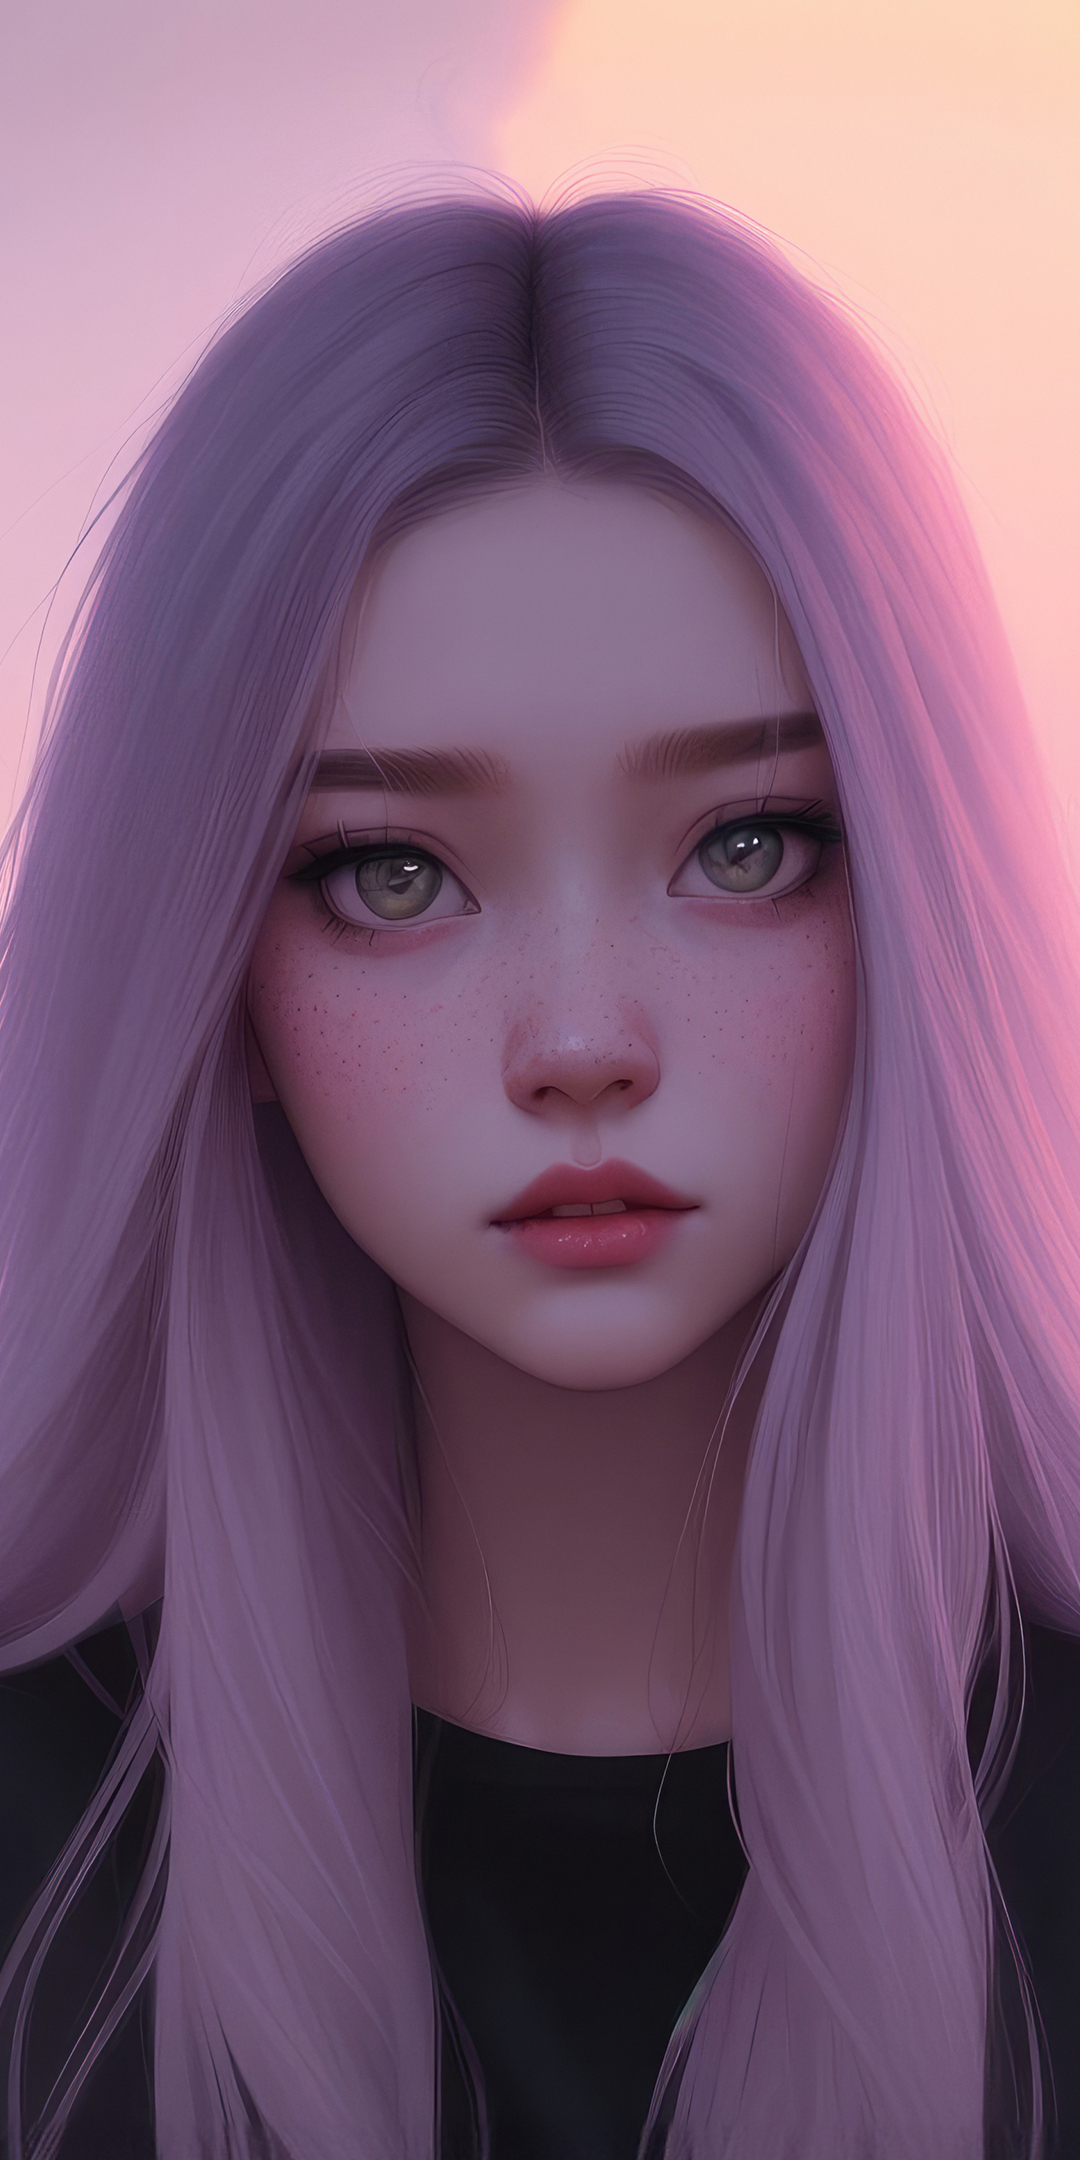 Girl in pink hair, cute teen girl art, 1080x2160 wallpaper